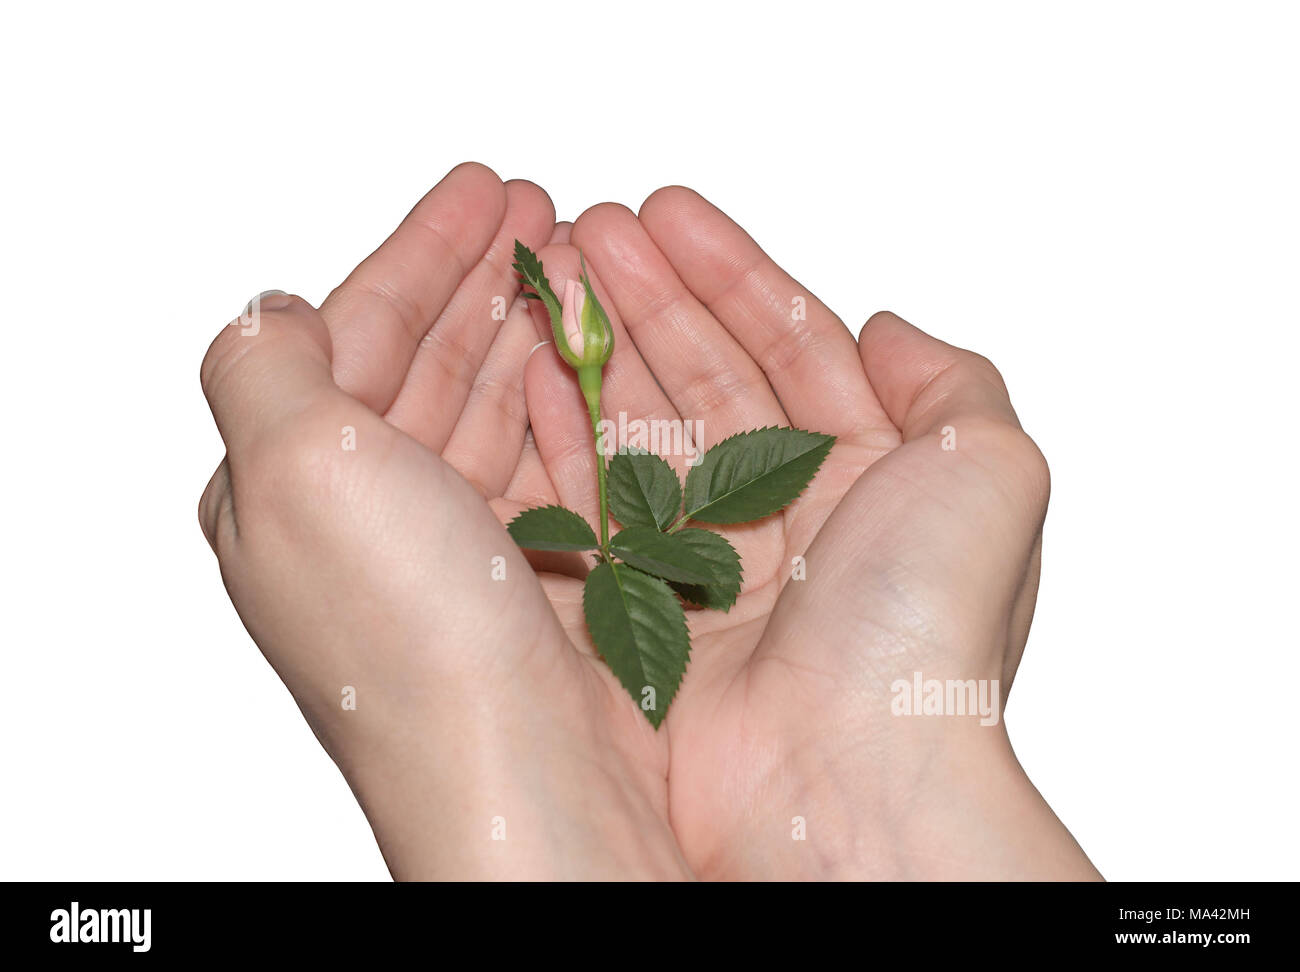 La protection de la nature concept. green sprout dans les mains sur un fond isolé blanc Banque D'Images